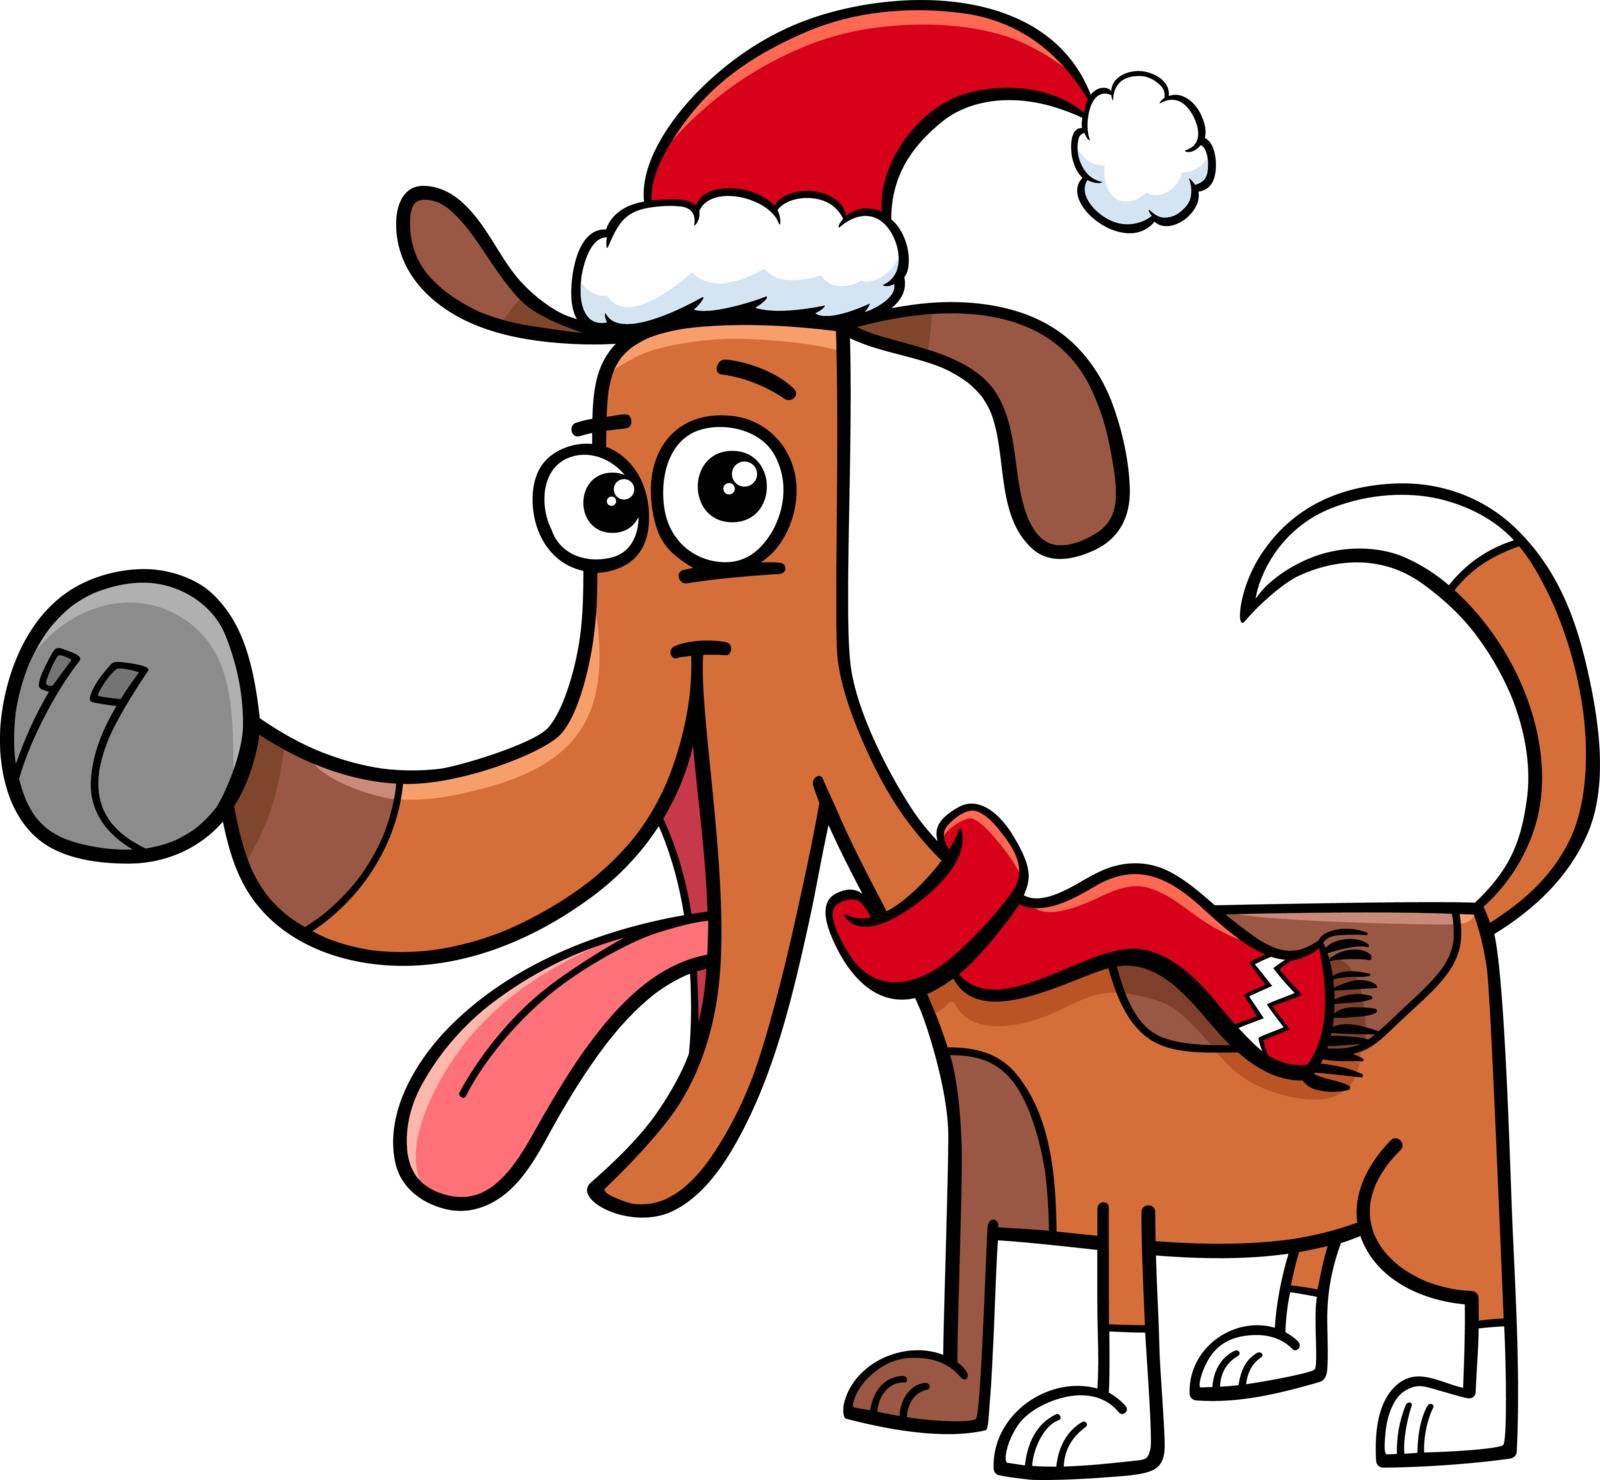 dog with scarf on Christmas cartoon by izakowski